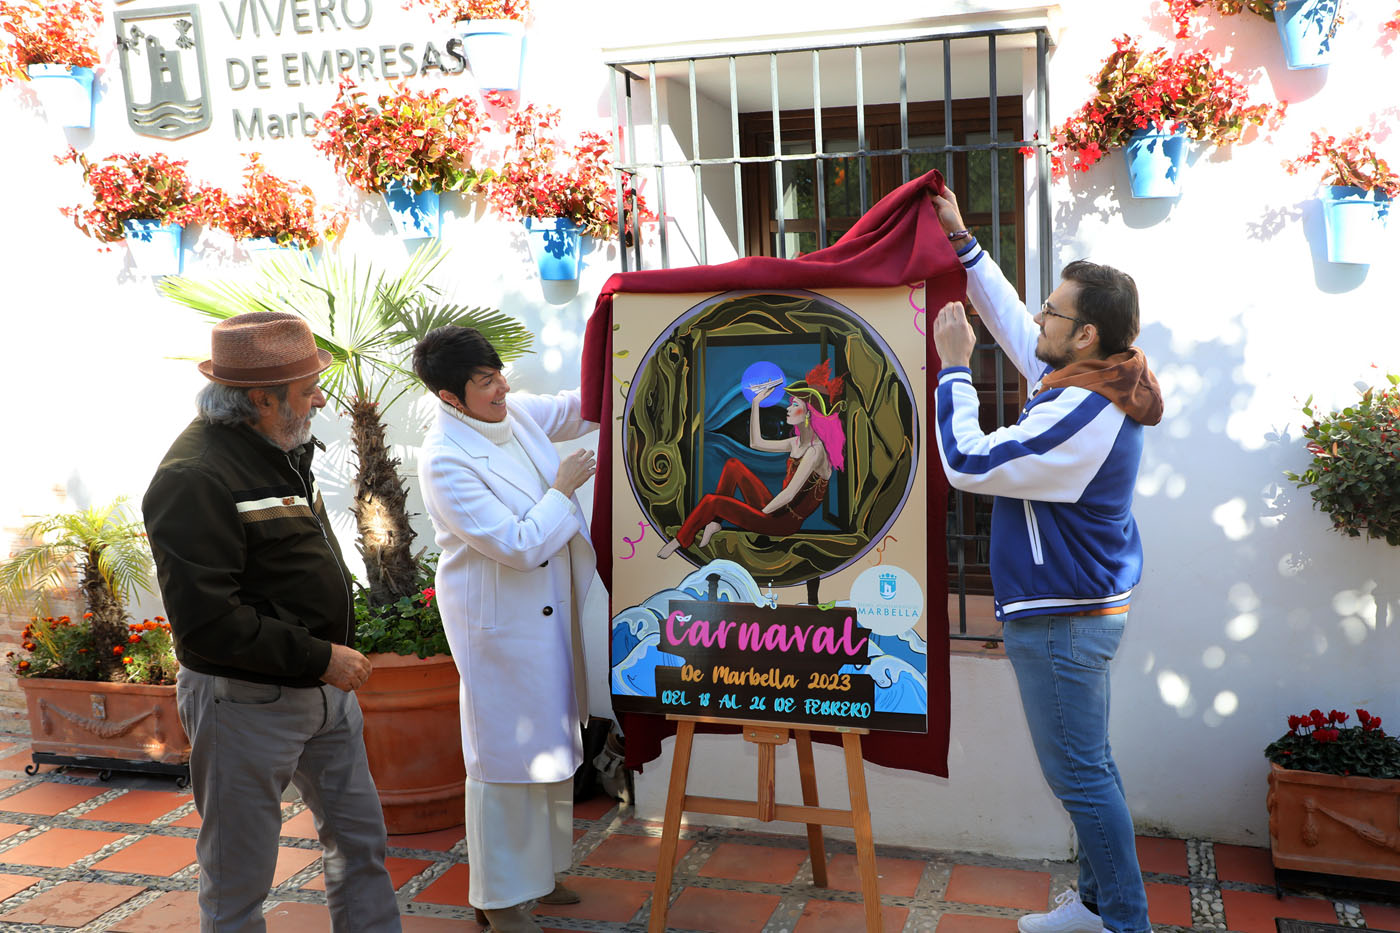 Cerca de un centenar de obras se han presentado al Concurso de carteles del Carnaval de Marbella 2023, que se celebrará del 18 al 26 de febrero, y del que ha resultado ganador el trabajo del autor Antonio Jiménez